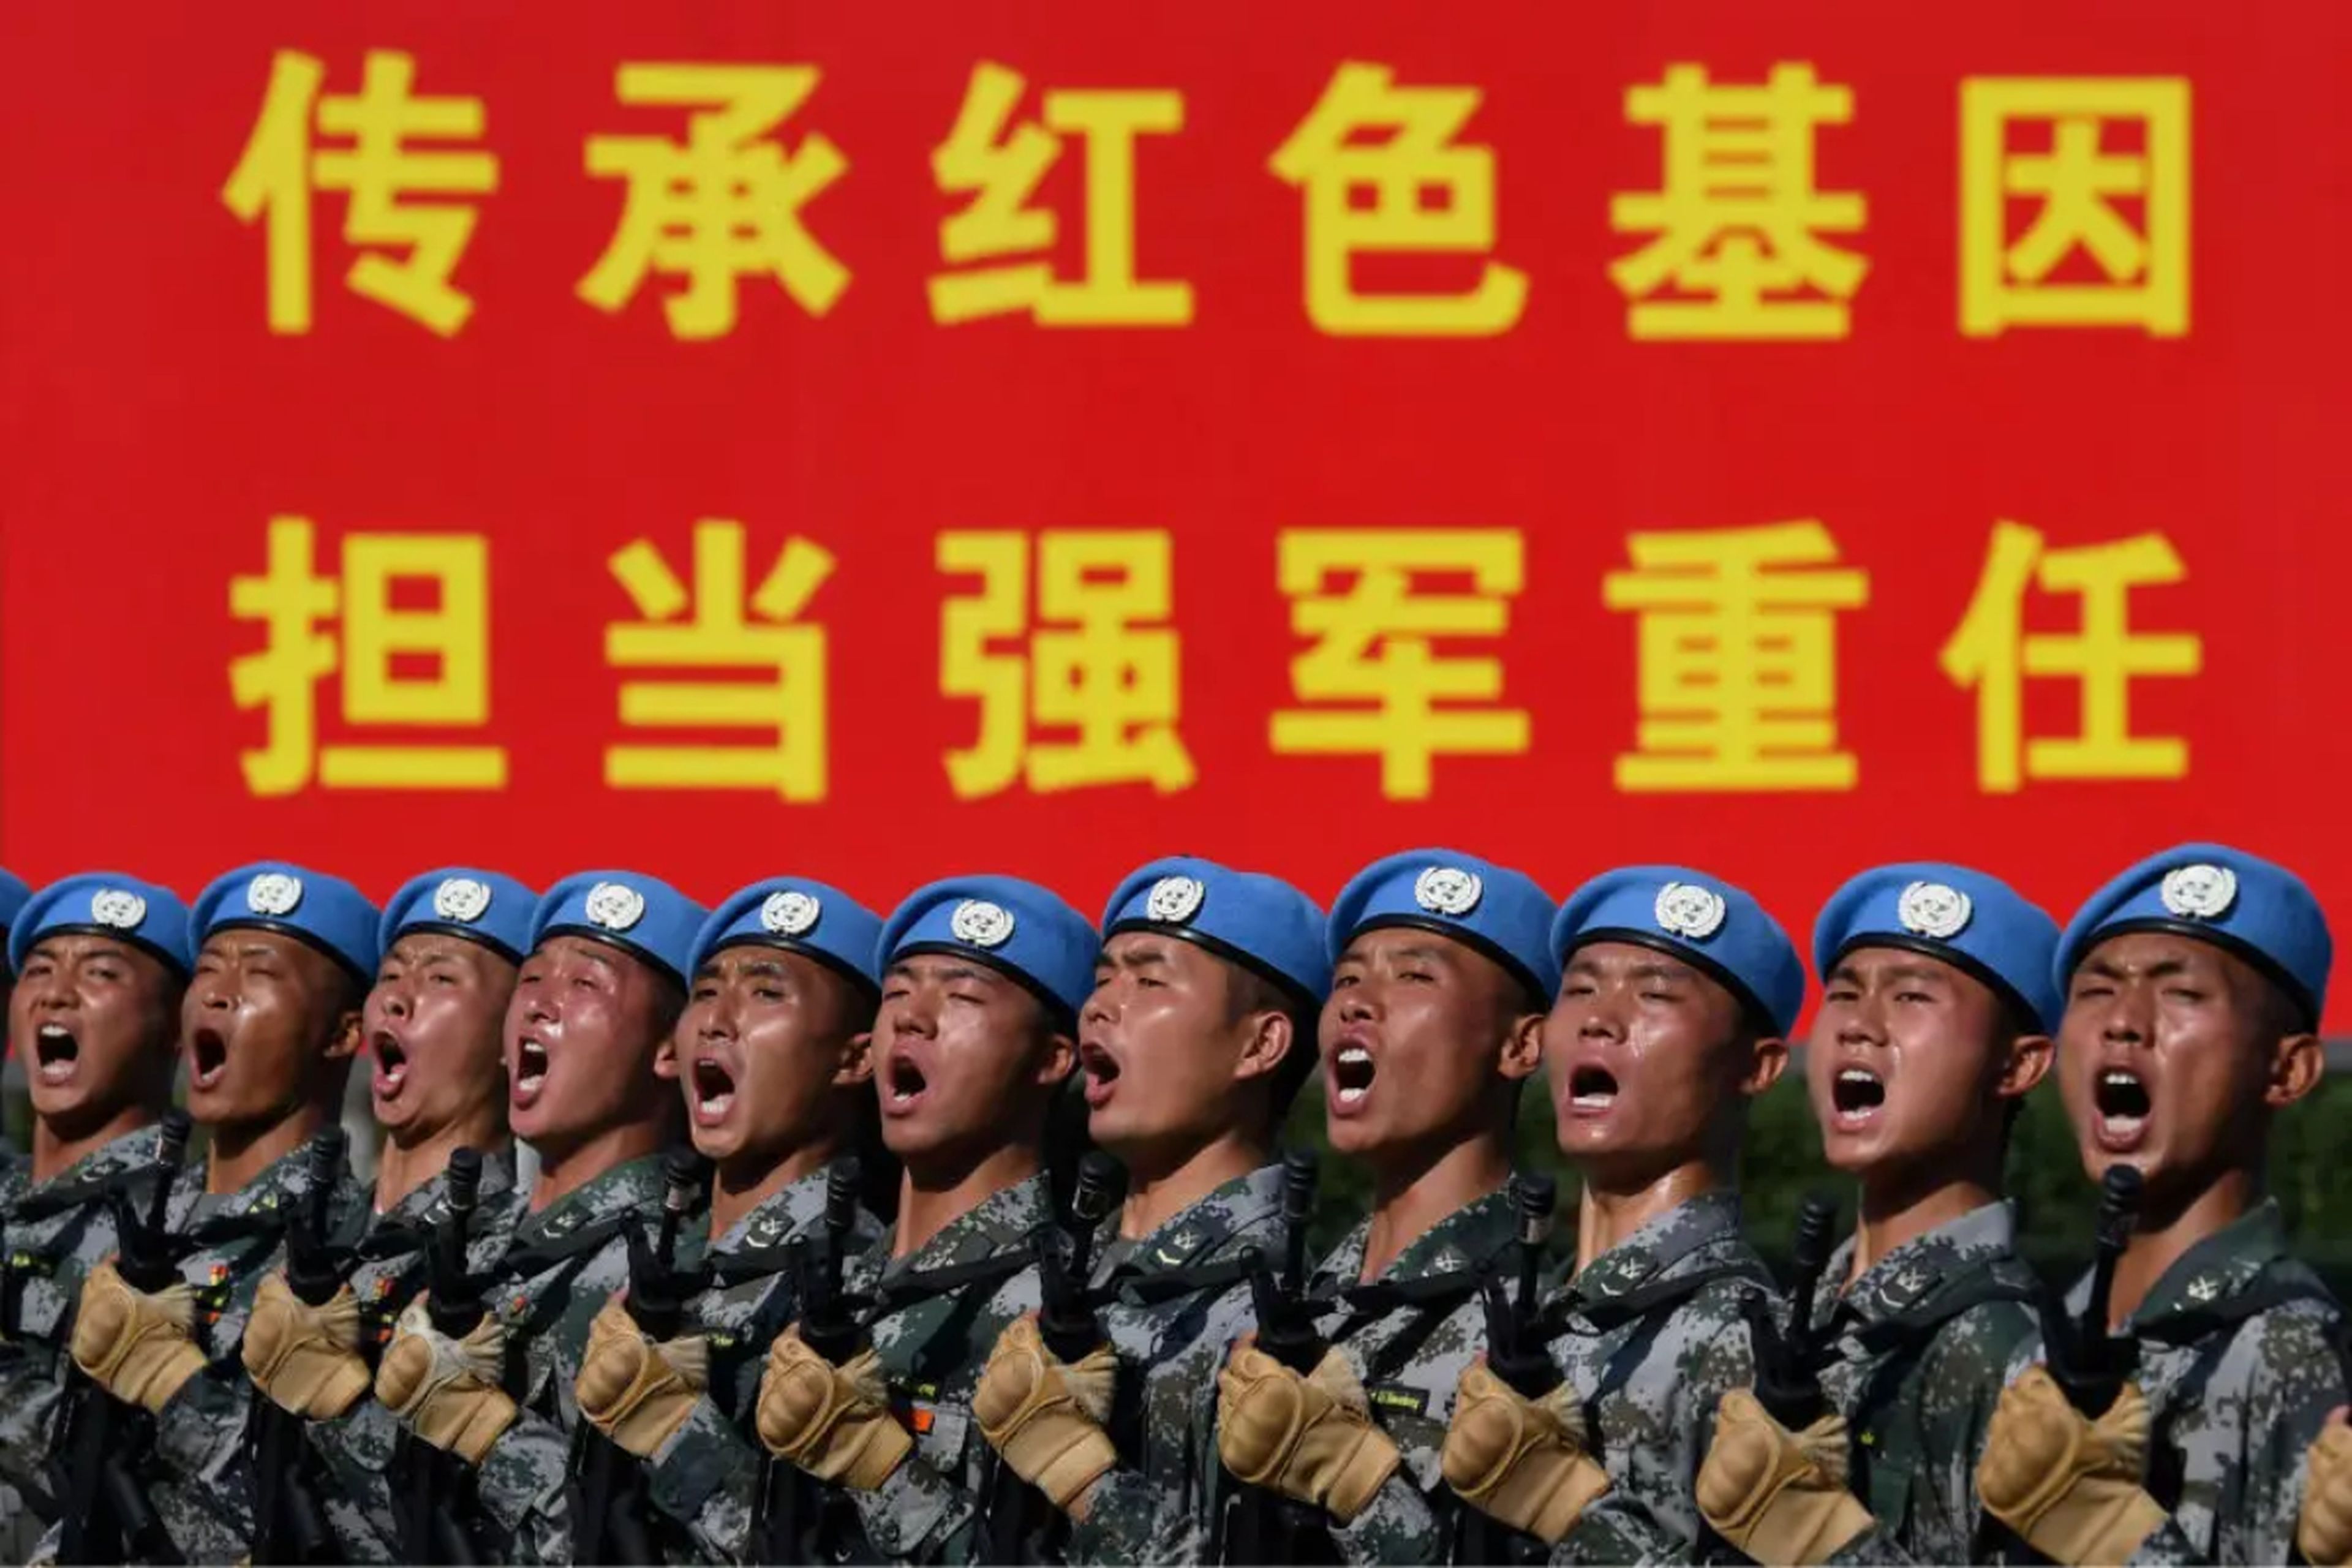 Soldados chinos practican la marcha en formación durante un desfile militar en Pekín, China.